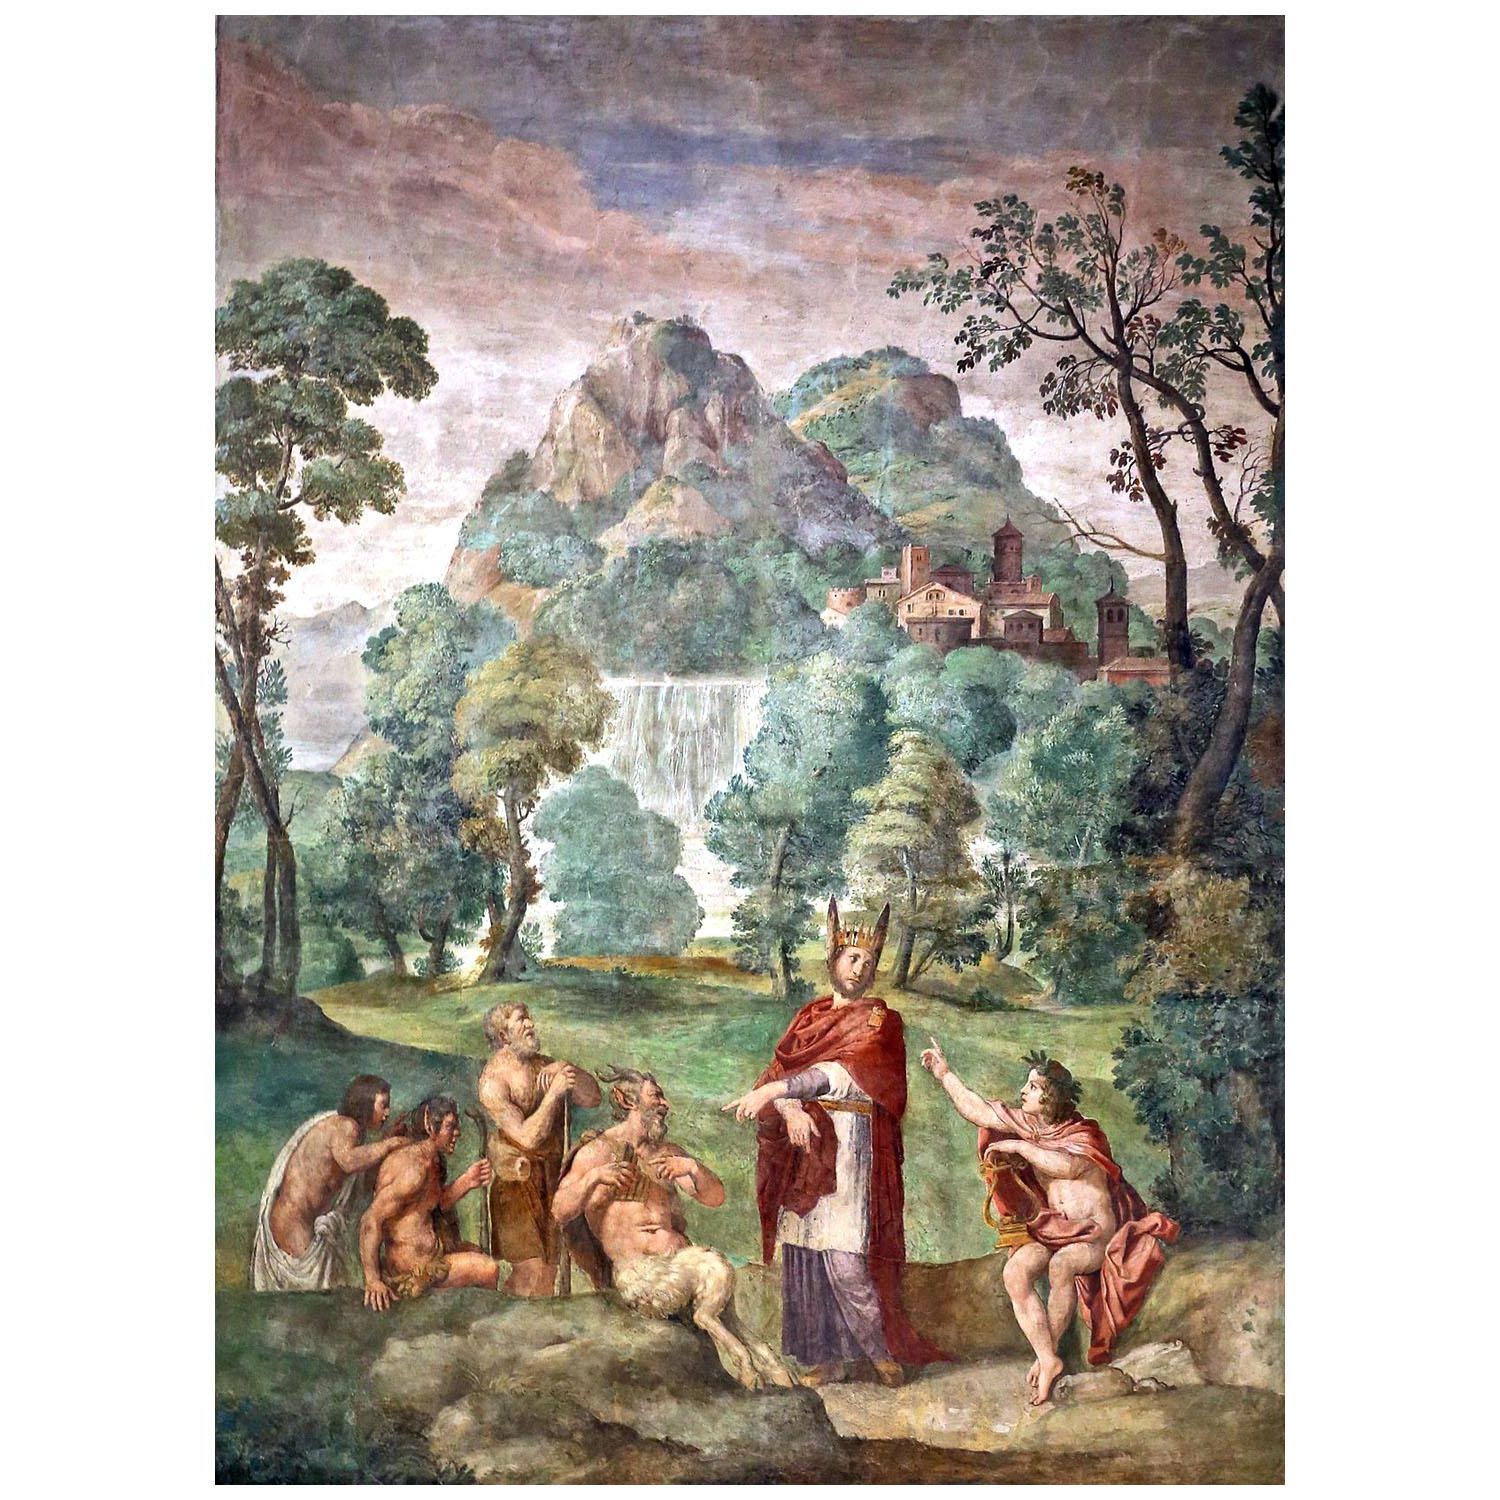 Domenichino. Giudizio di re Mida. 1618. National Gallery, London